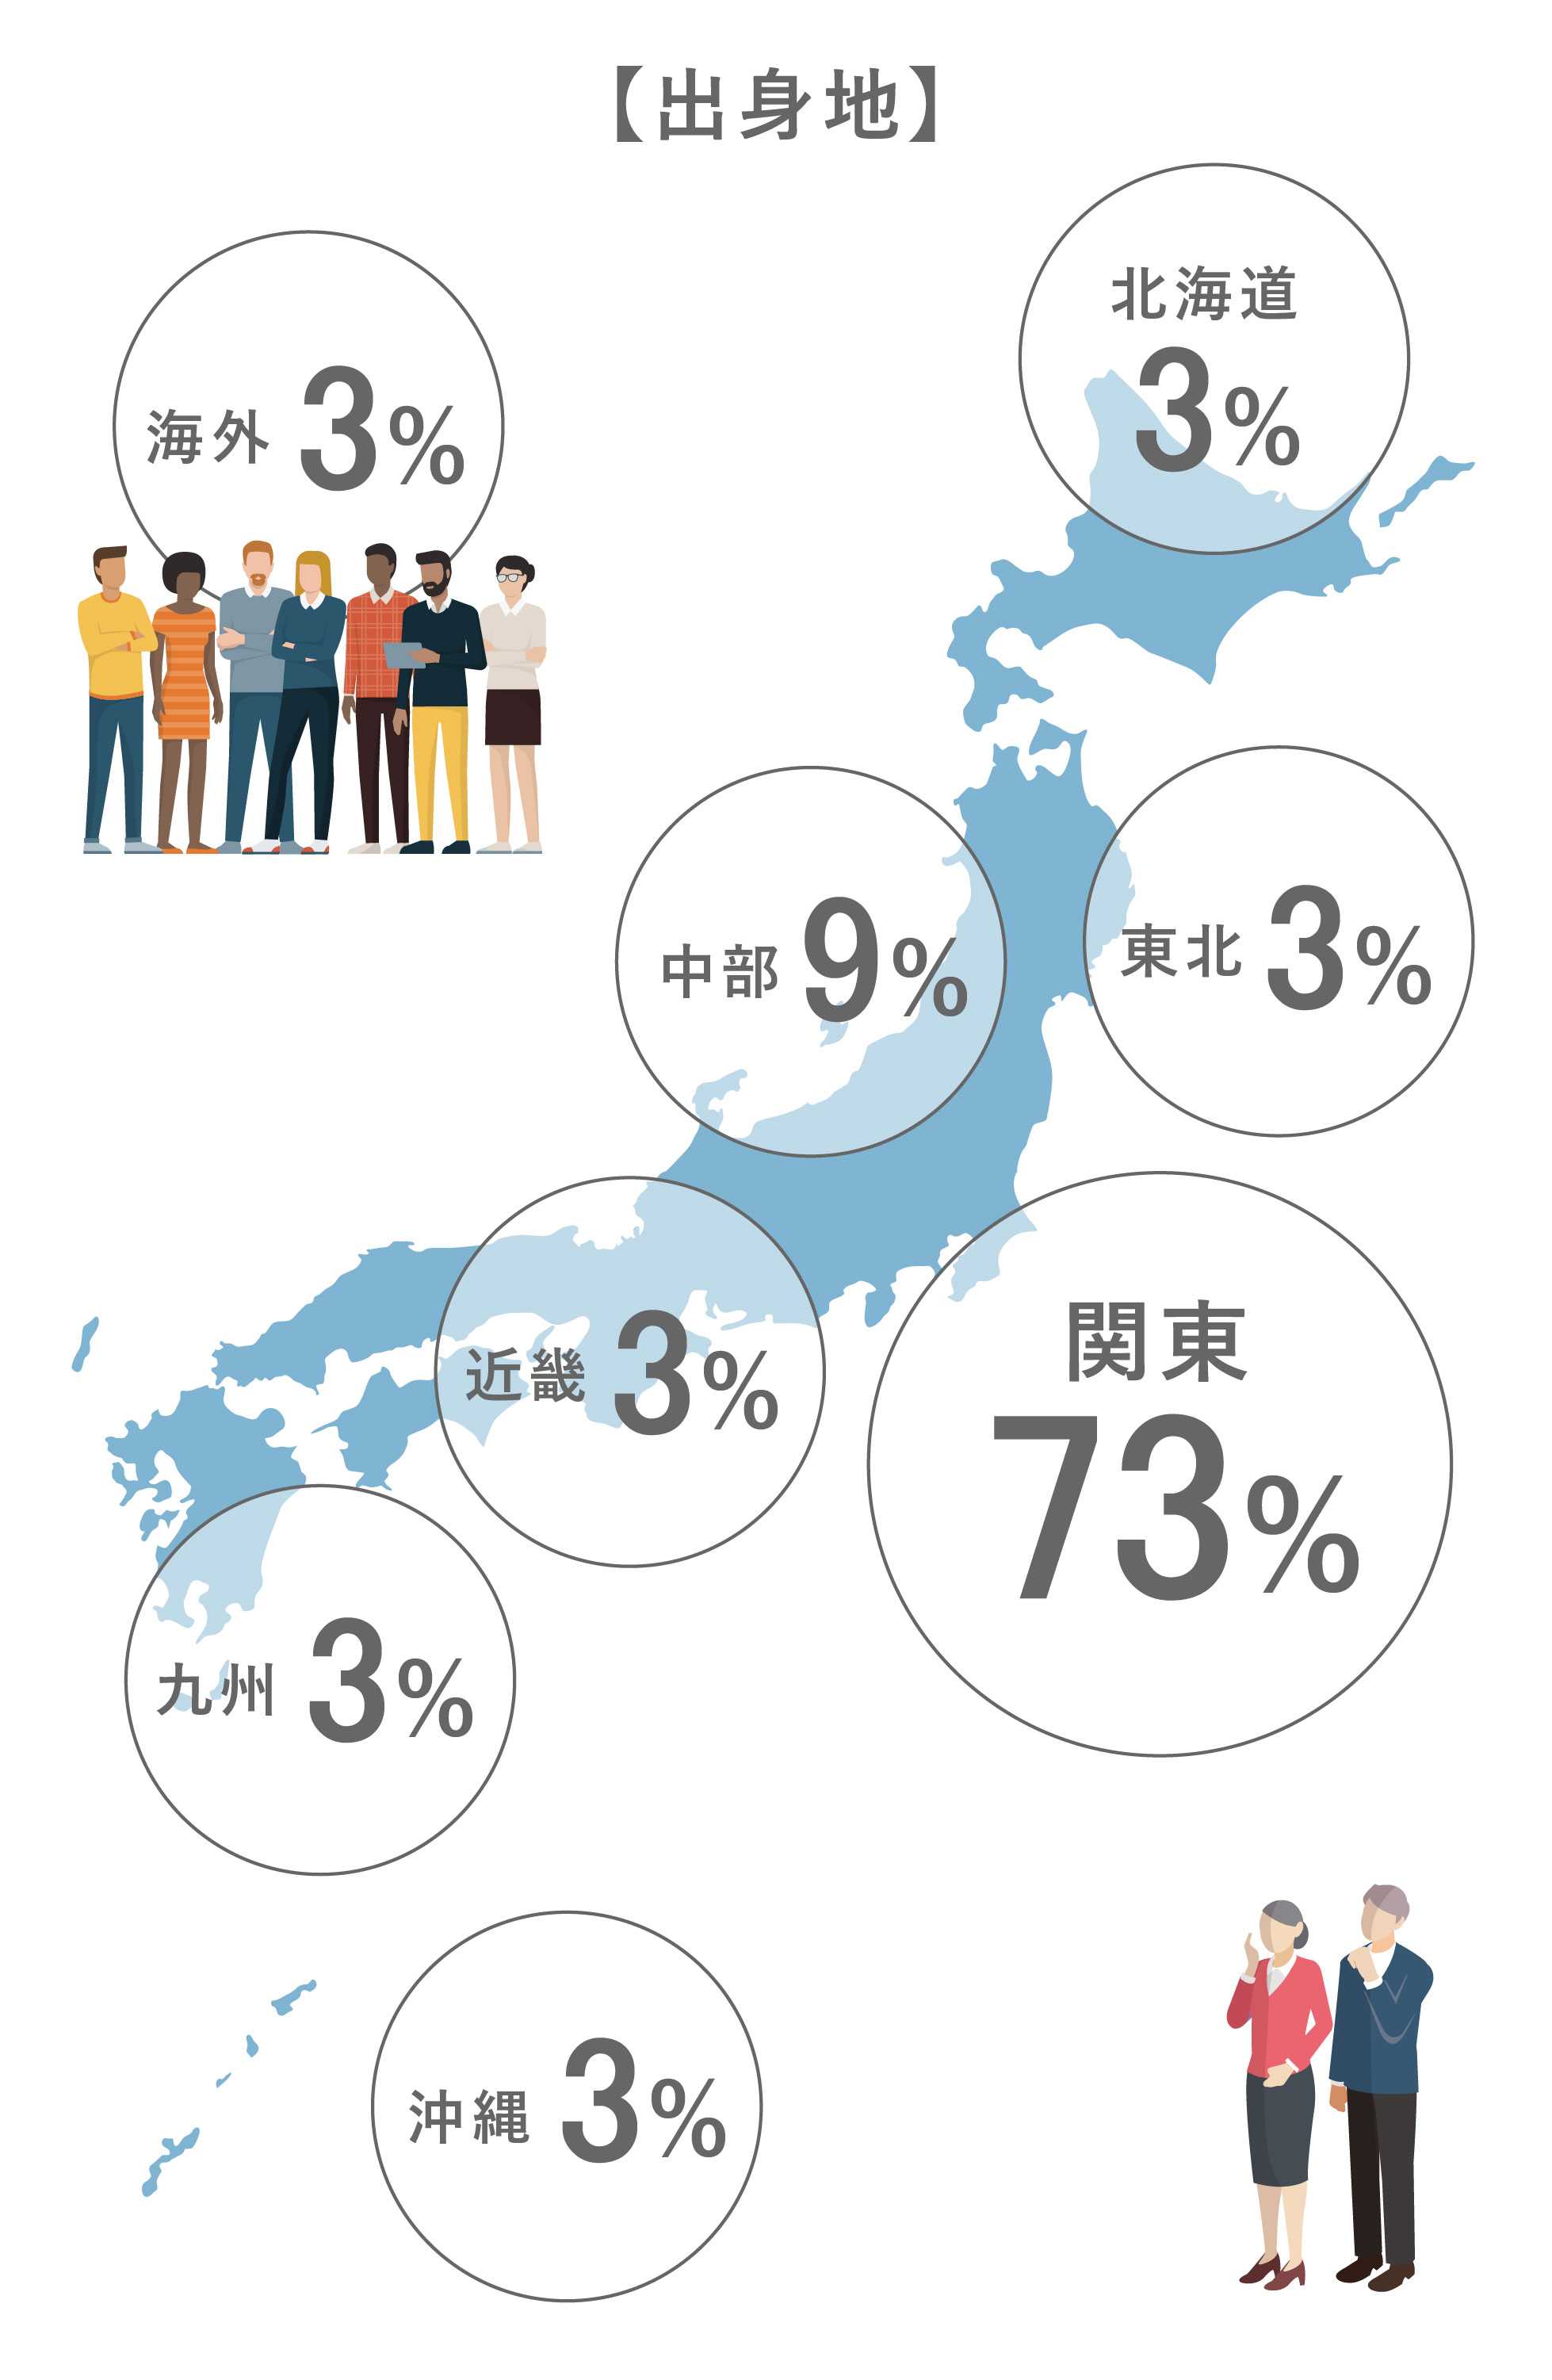 出身地：北海道3%／中部9%／東北3%／関東73%／近畿3%／九州3%／沖縄3%/海外3%